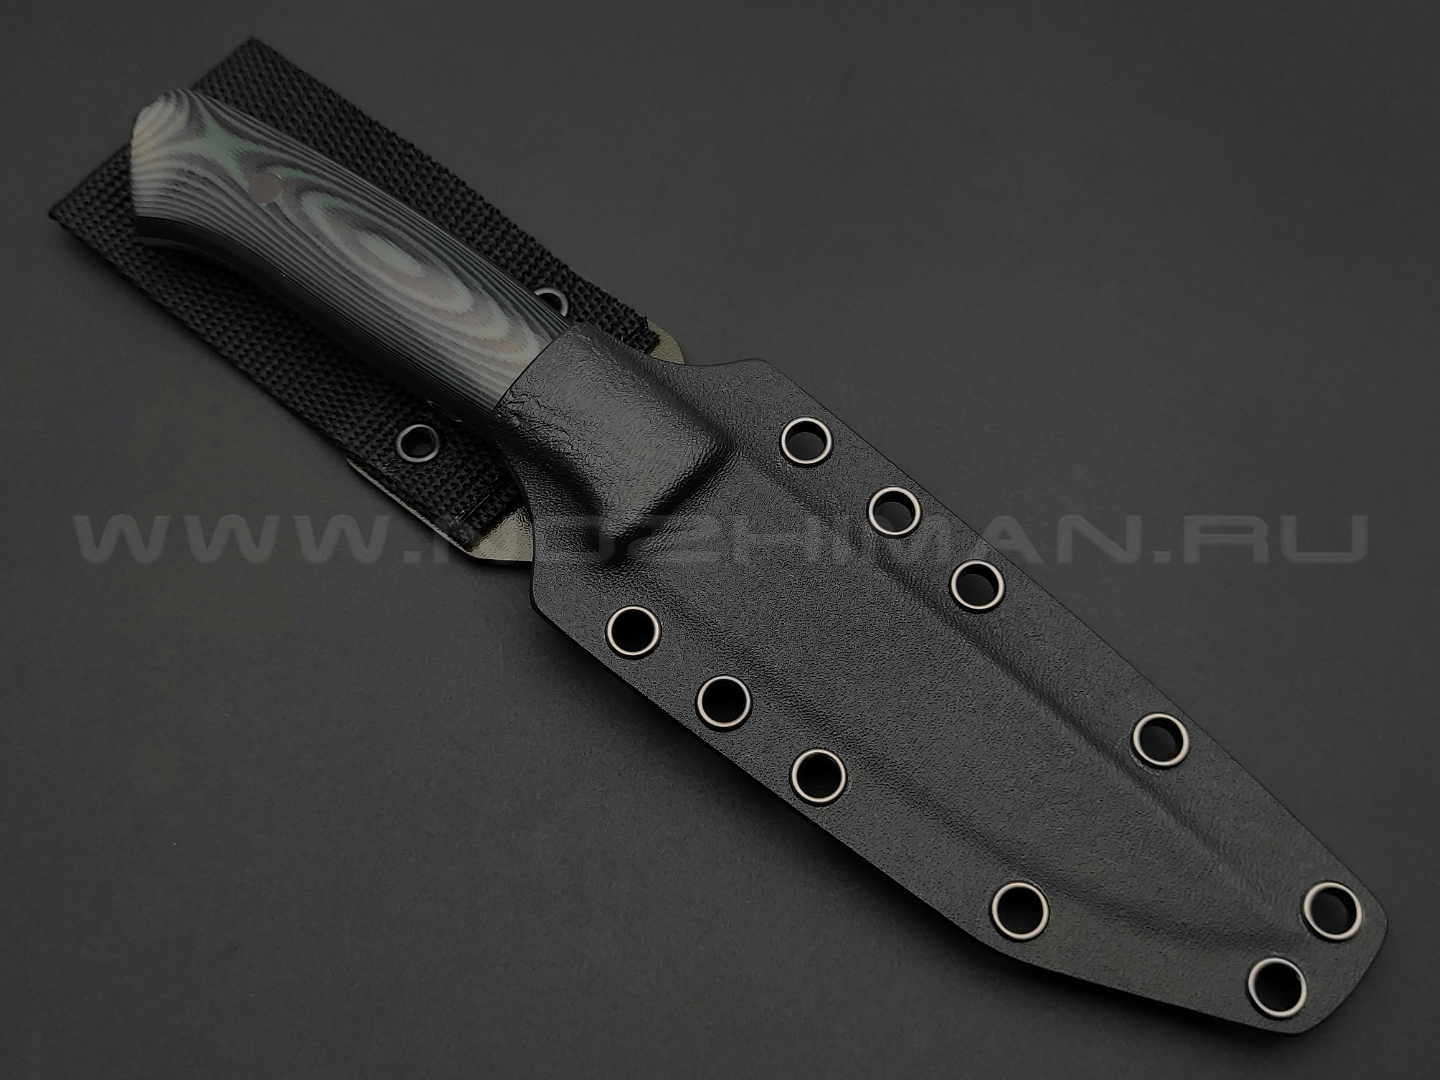 Apus Knives нож Fishman сталь N690, рукоять G10 black & green, ножны kydex black